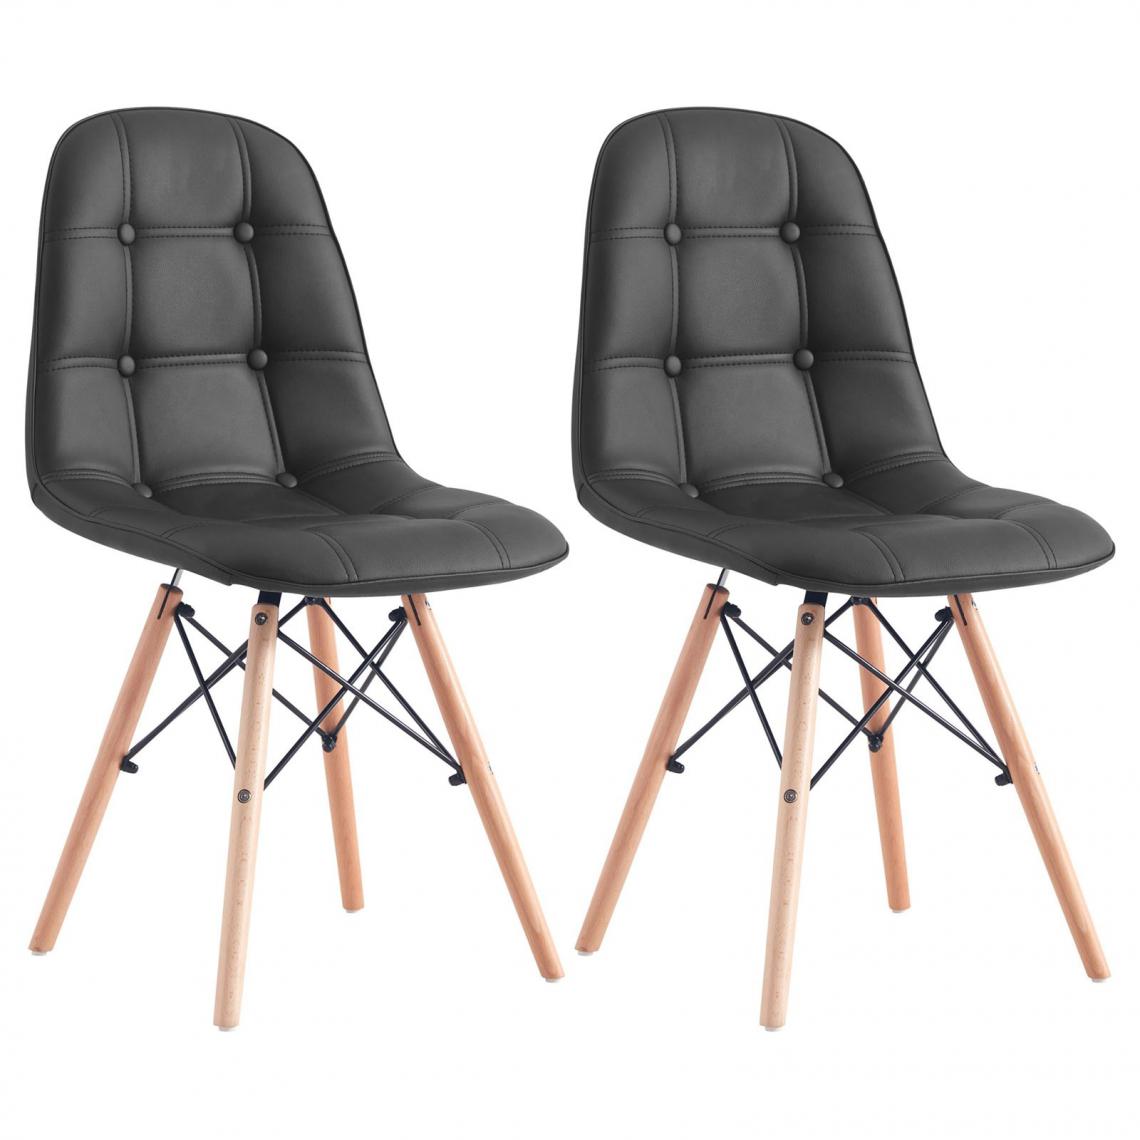 Idimex - Lot de 2 chaises CESAR, en synthétique noir - Chaises